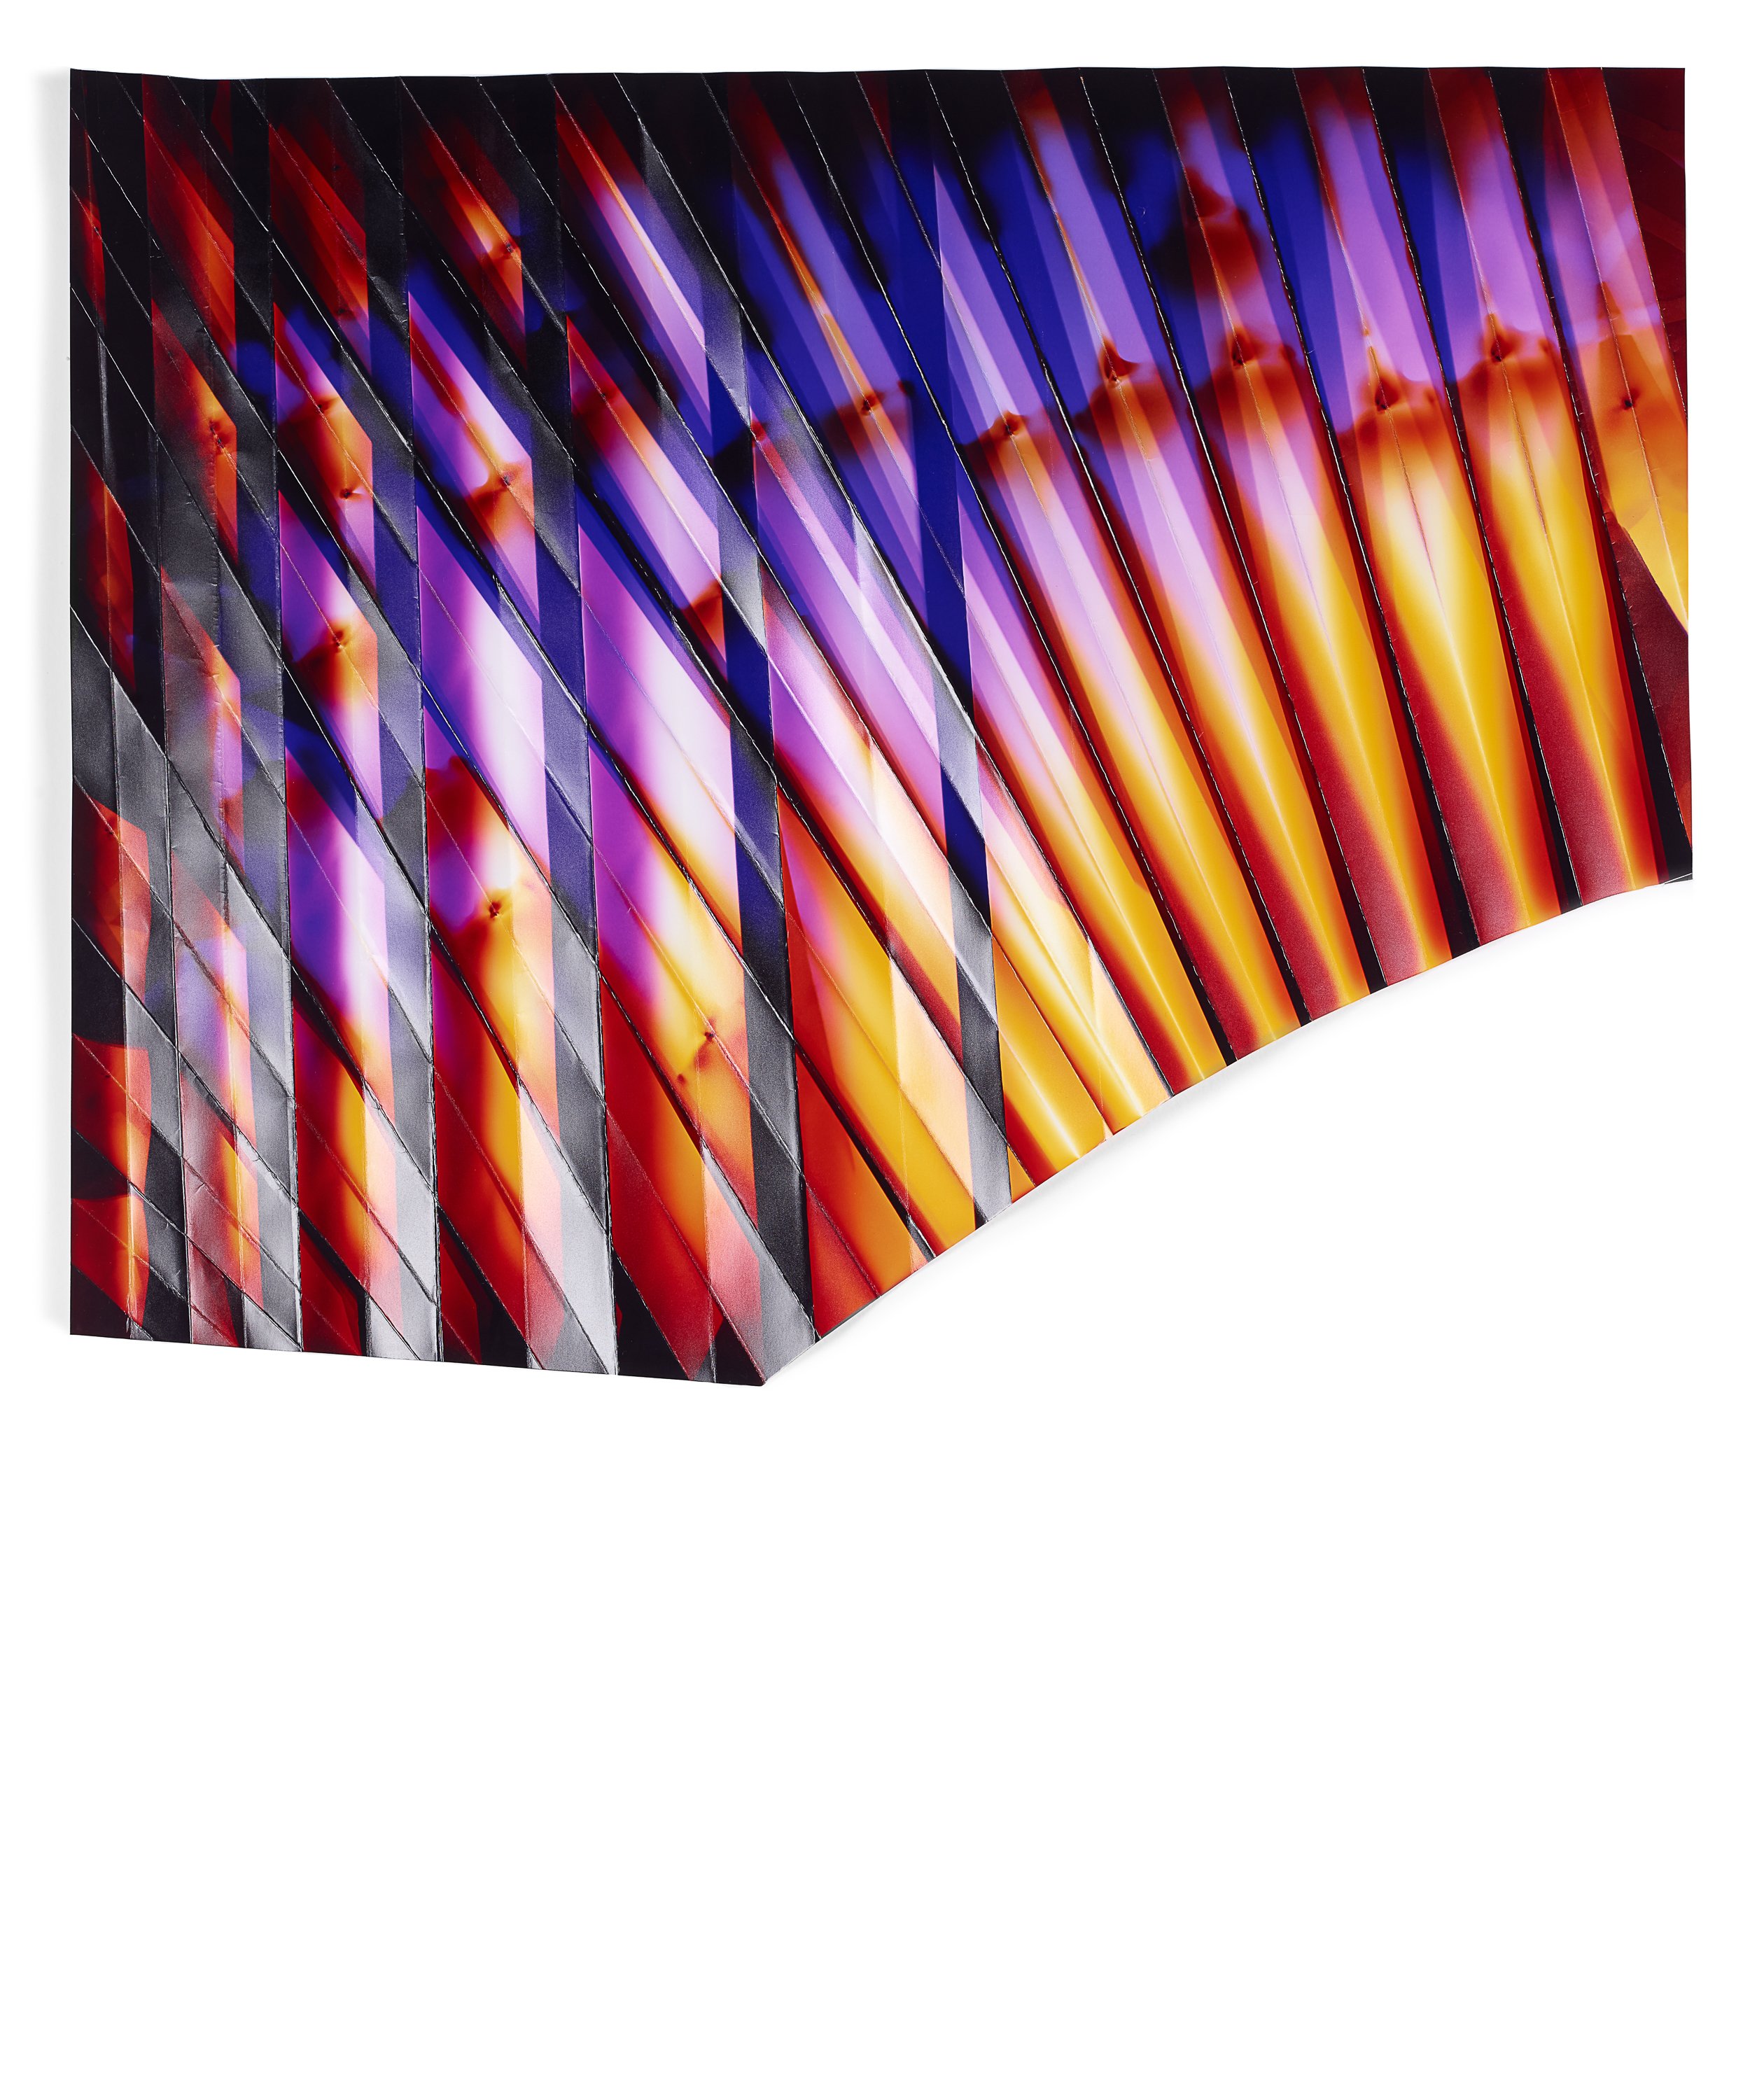   Volcanic Light 4,  2014  Folded chromogenic photogram  20 x 25 in 